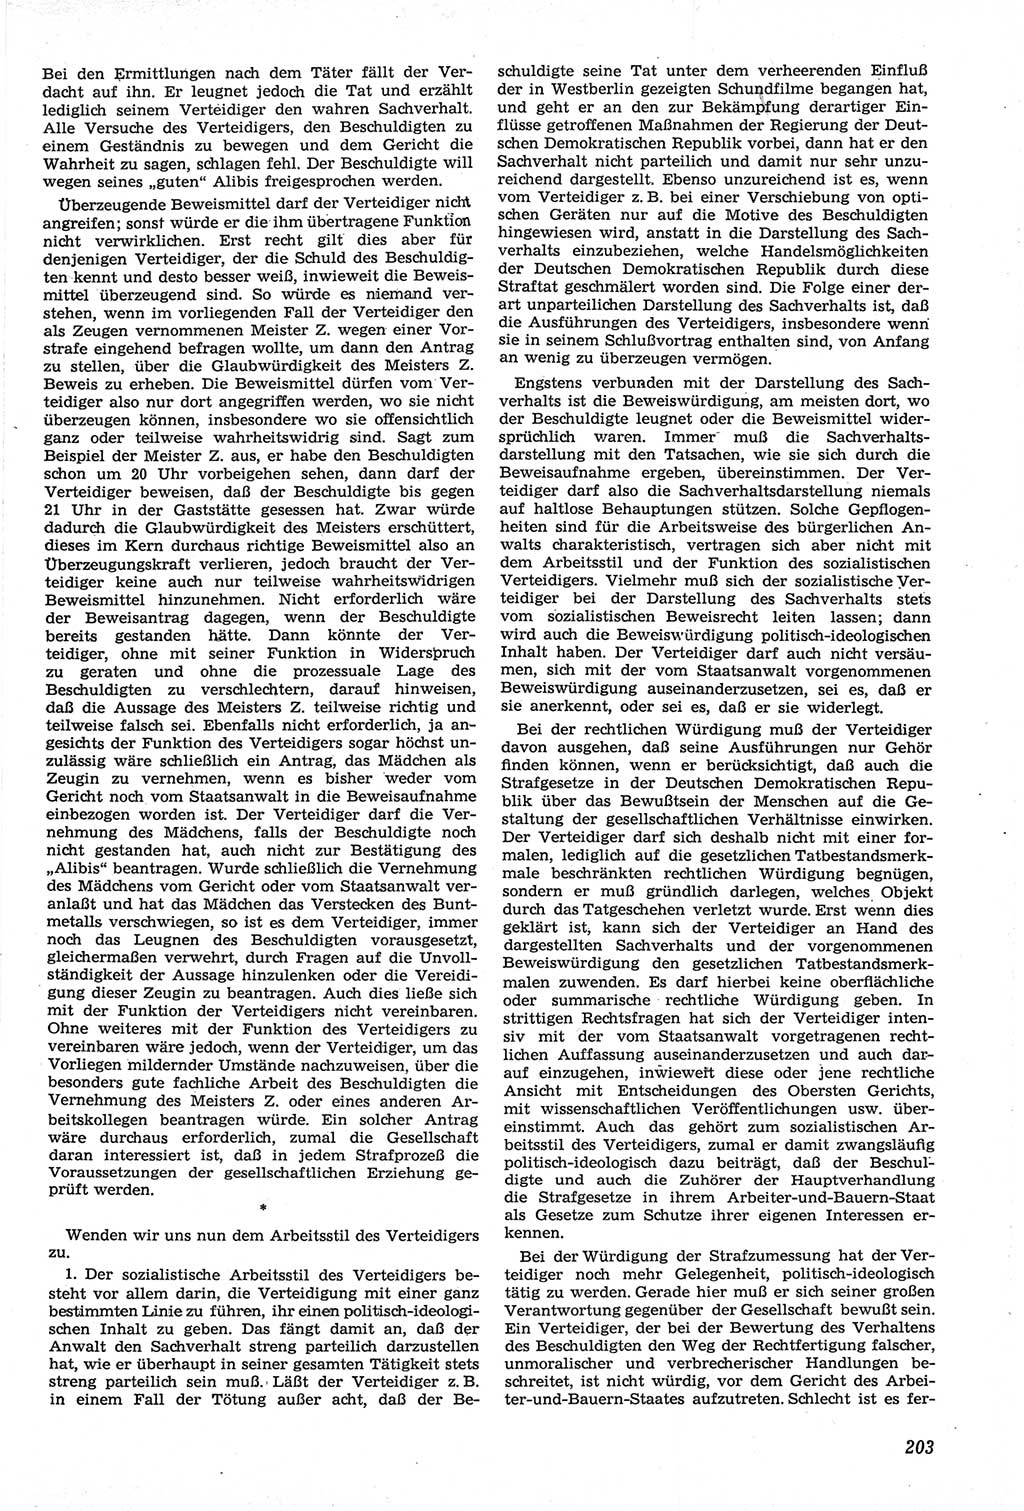 Neue Justiz (NJ), Zeitschrift für Recht und Rechtswissenschaft [Deutsche Demokratische Republik (DDR)], 14. Jahrgang 1960, Seite 203 (NJ DDR 1960, S. 203)